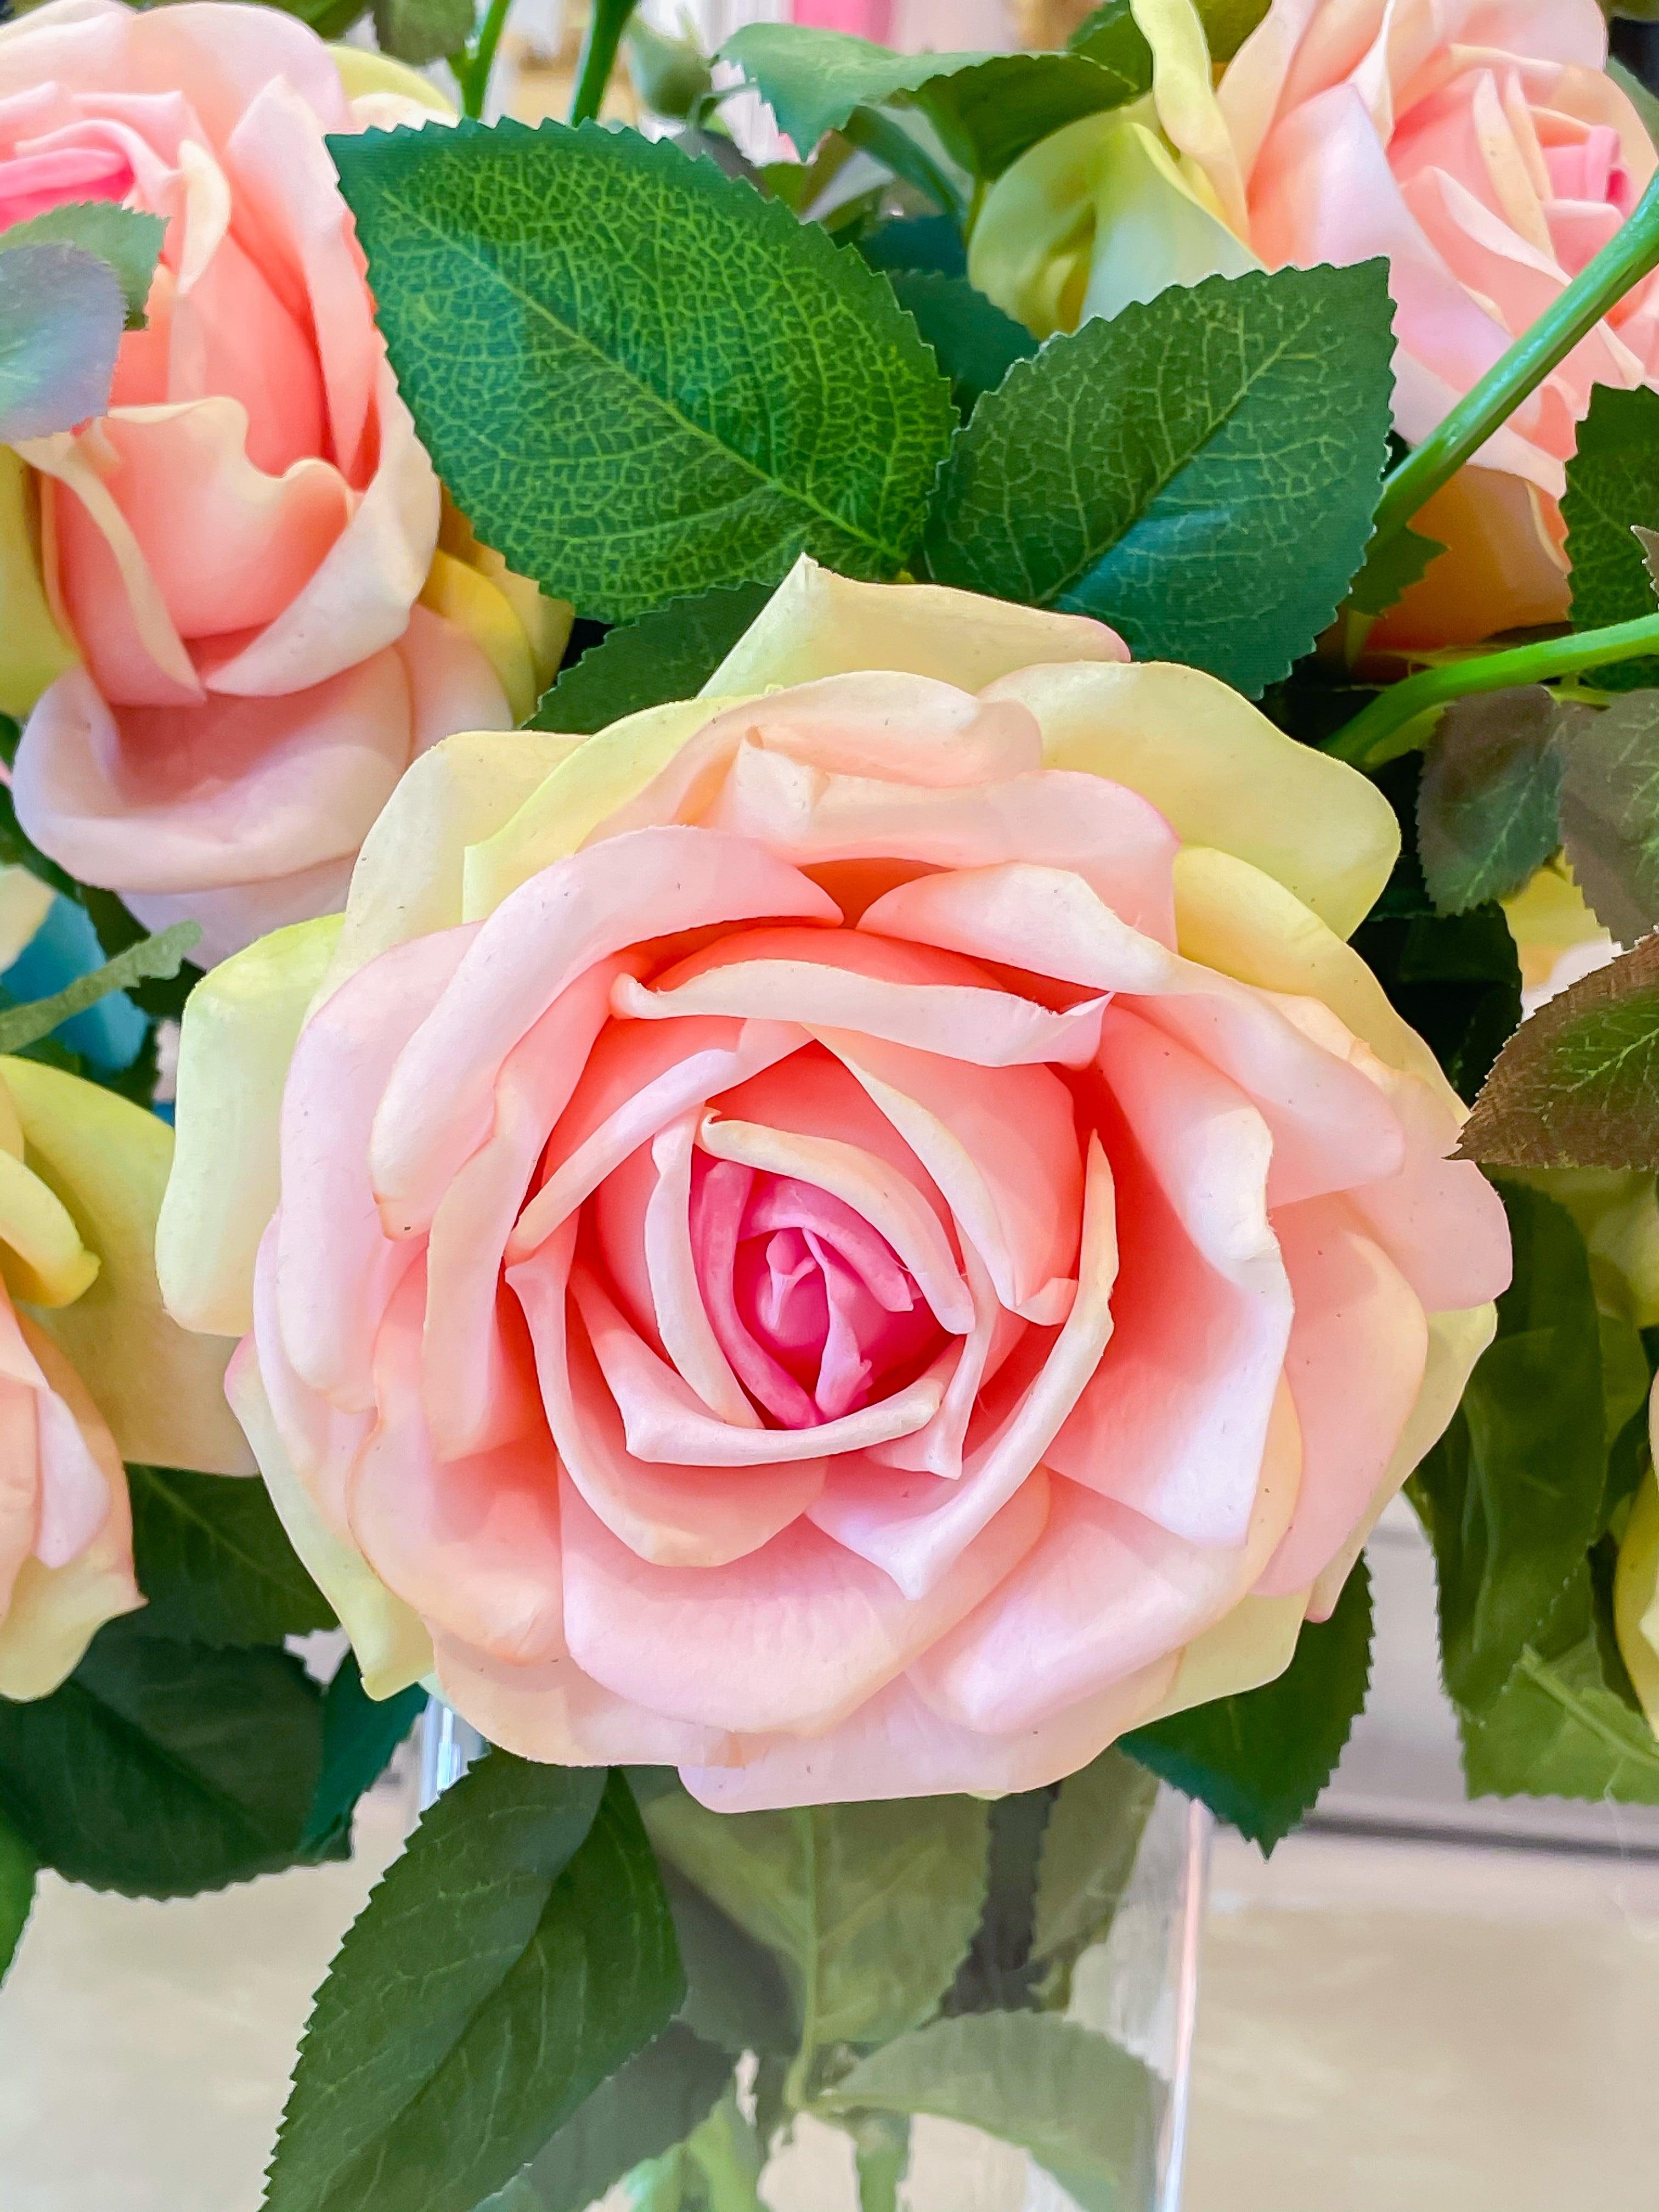 Slik Large Rose Tall Arrangement in Glass Vase – Flovery